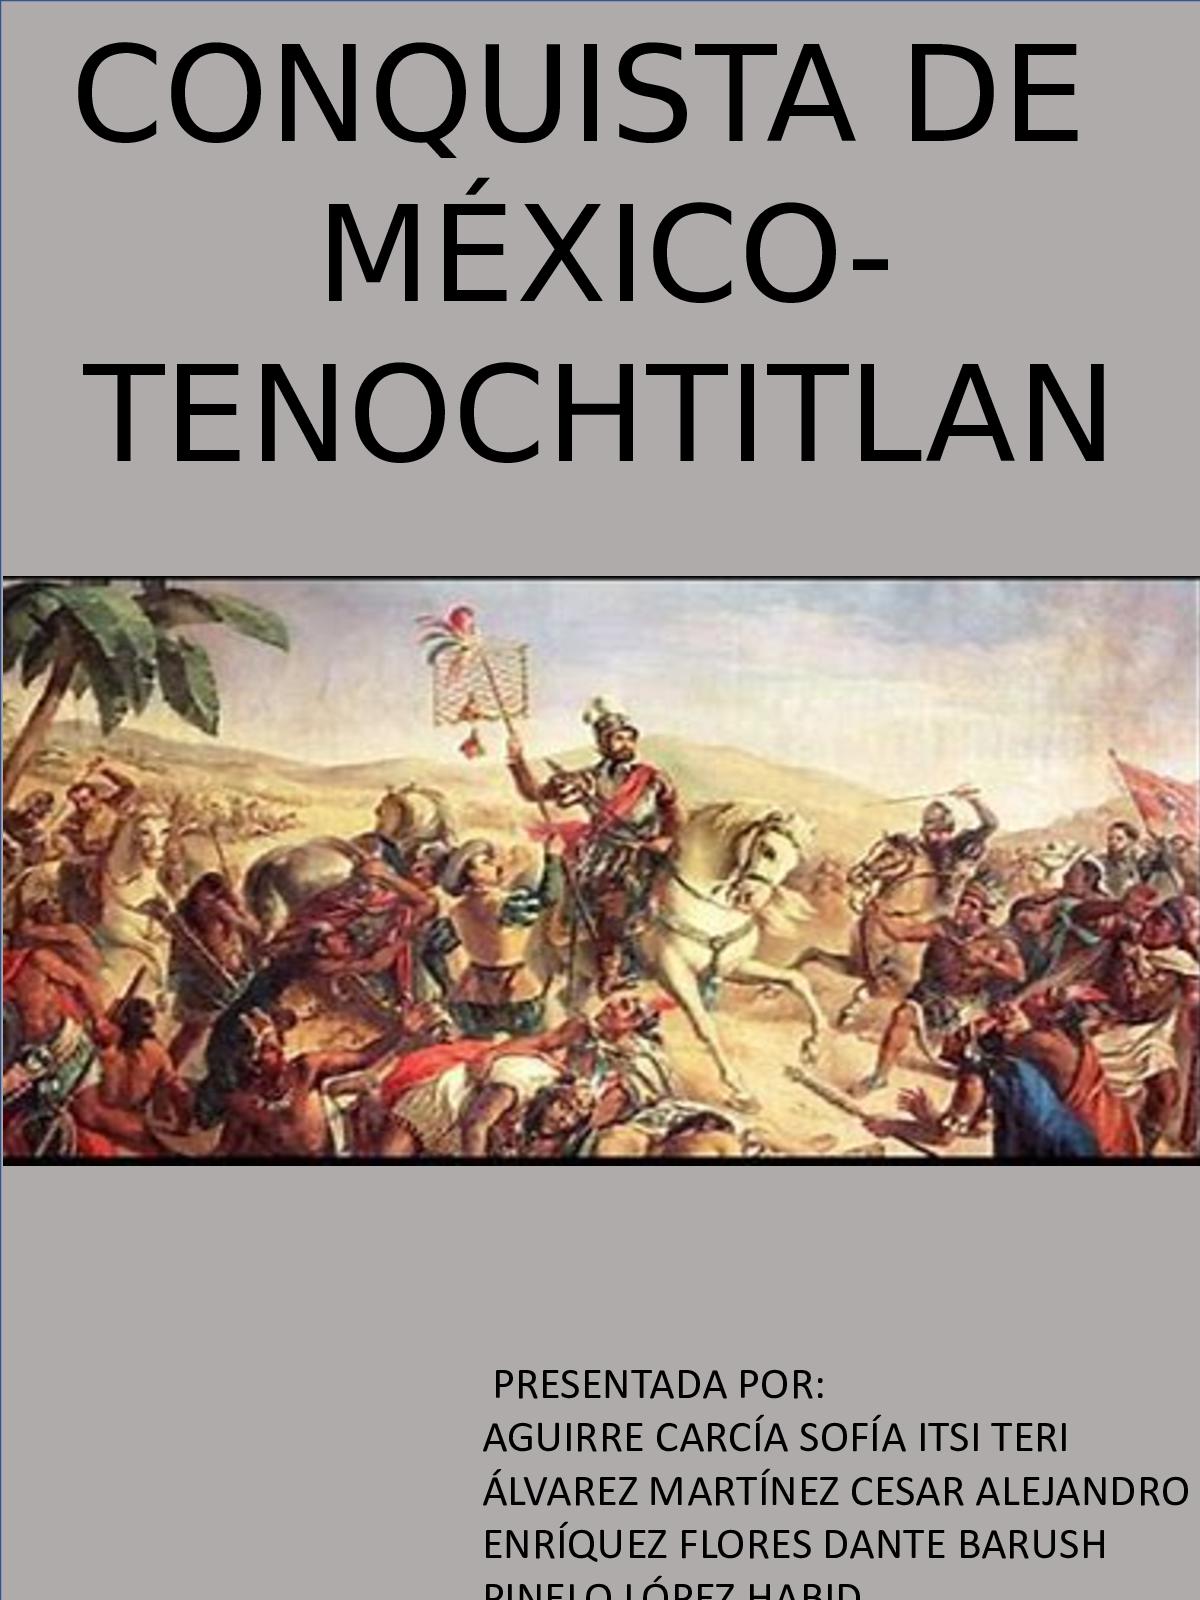 500 años de la conquista de México-Tenochtitlan – El oficio de historiar